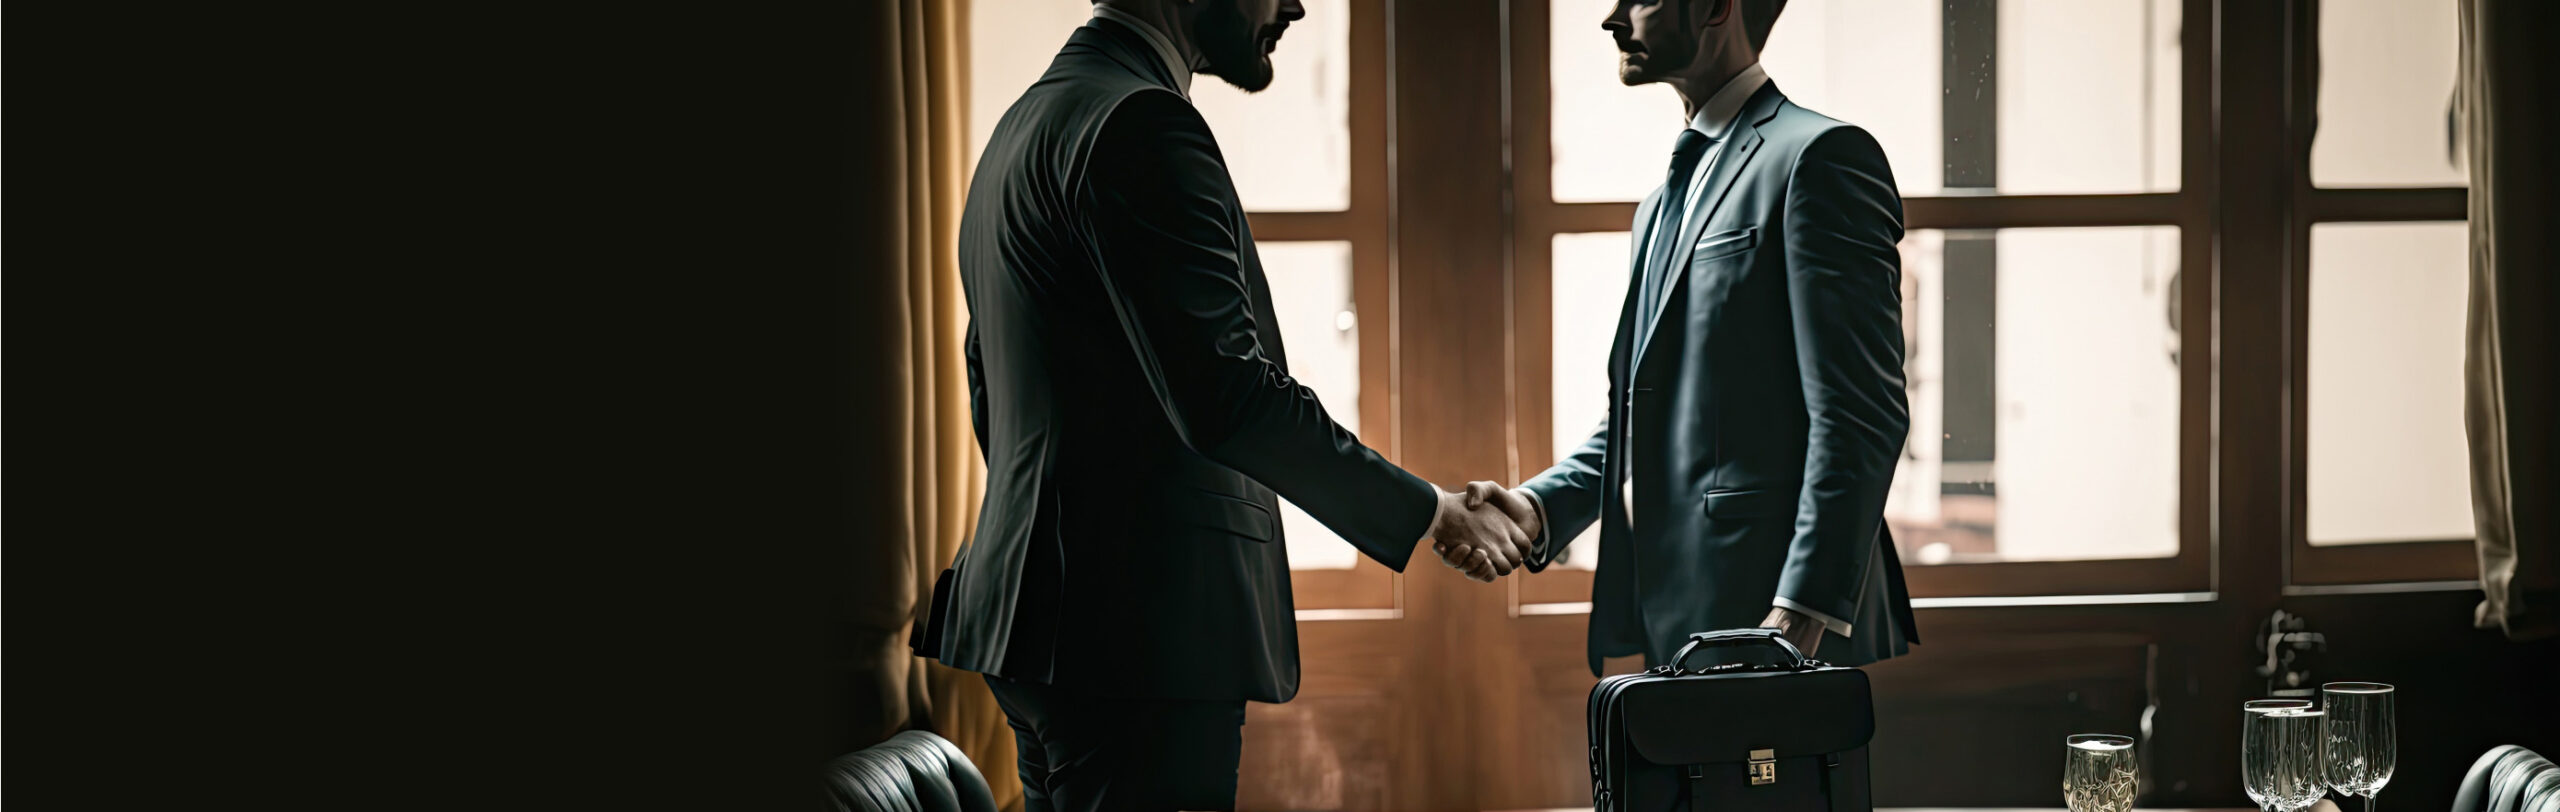 スーツを着た男性2人が握手をしている画像